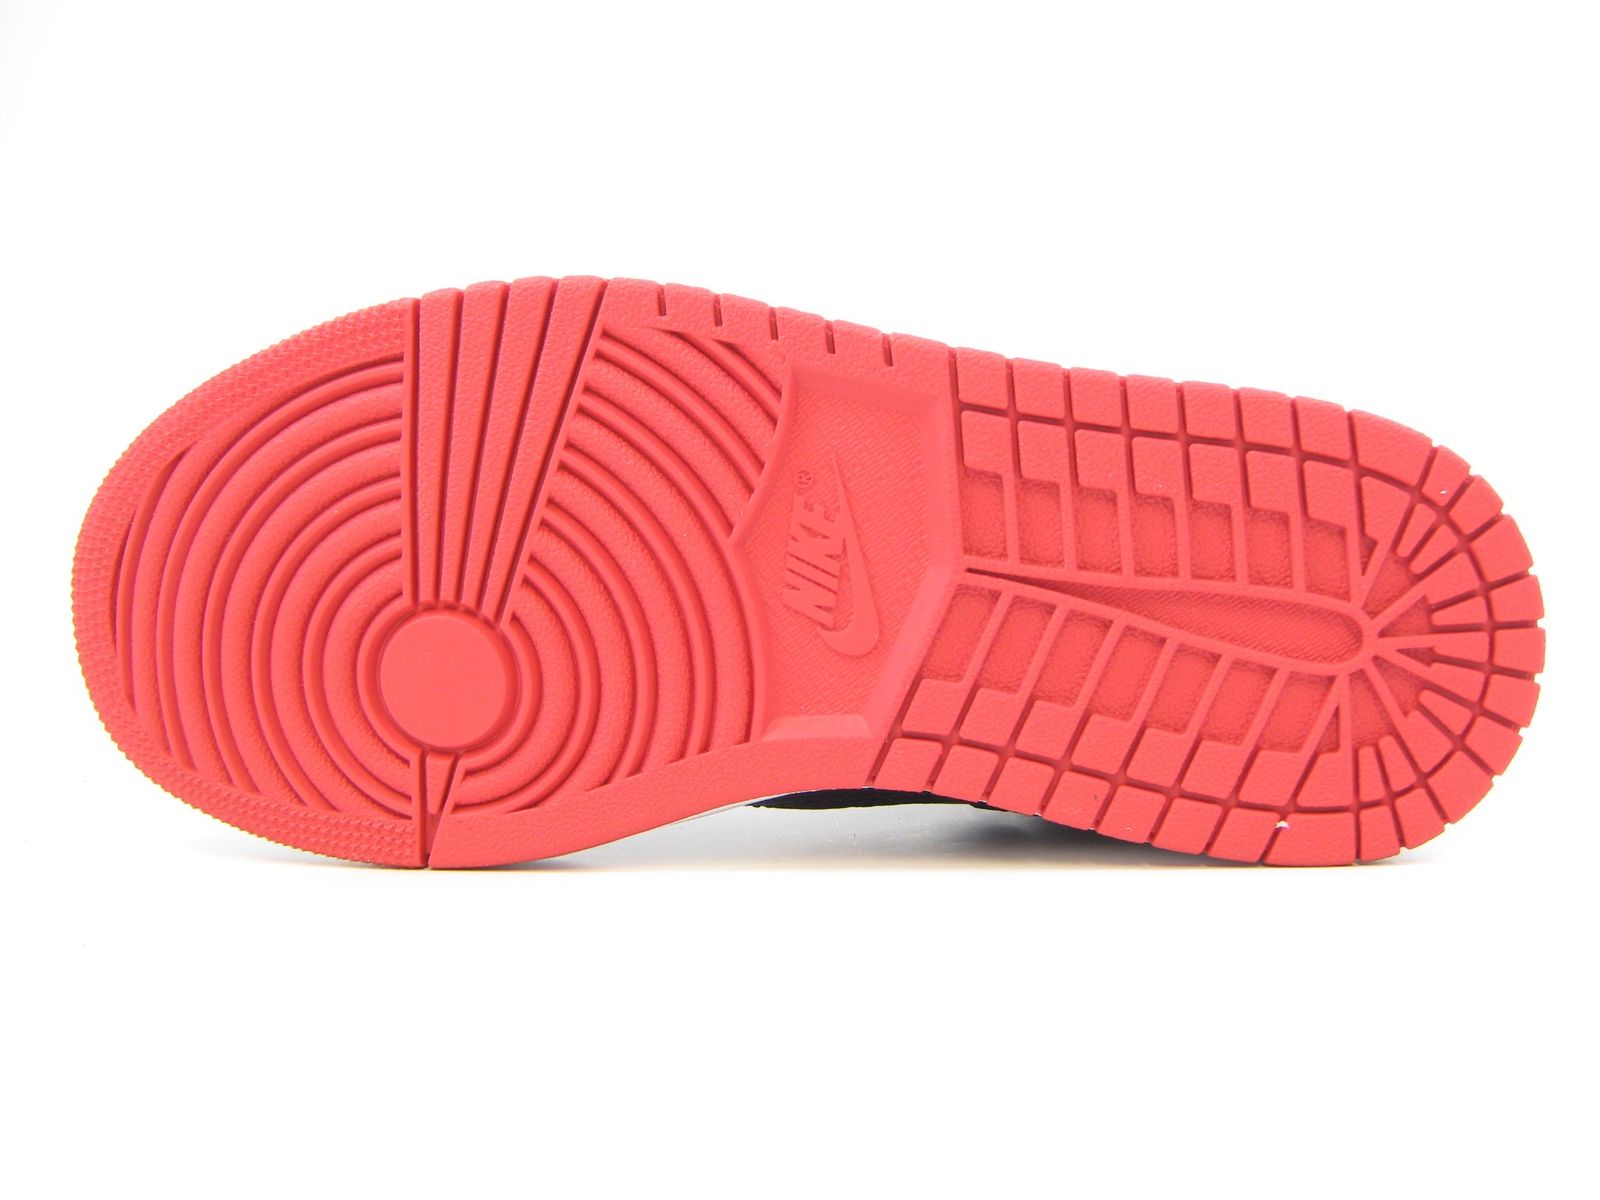 Schuh von Nike, 36